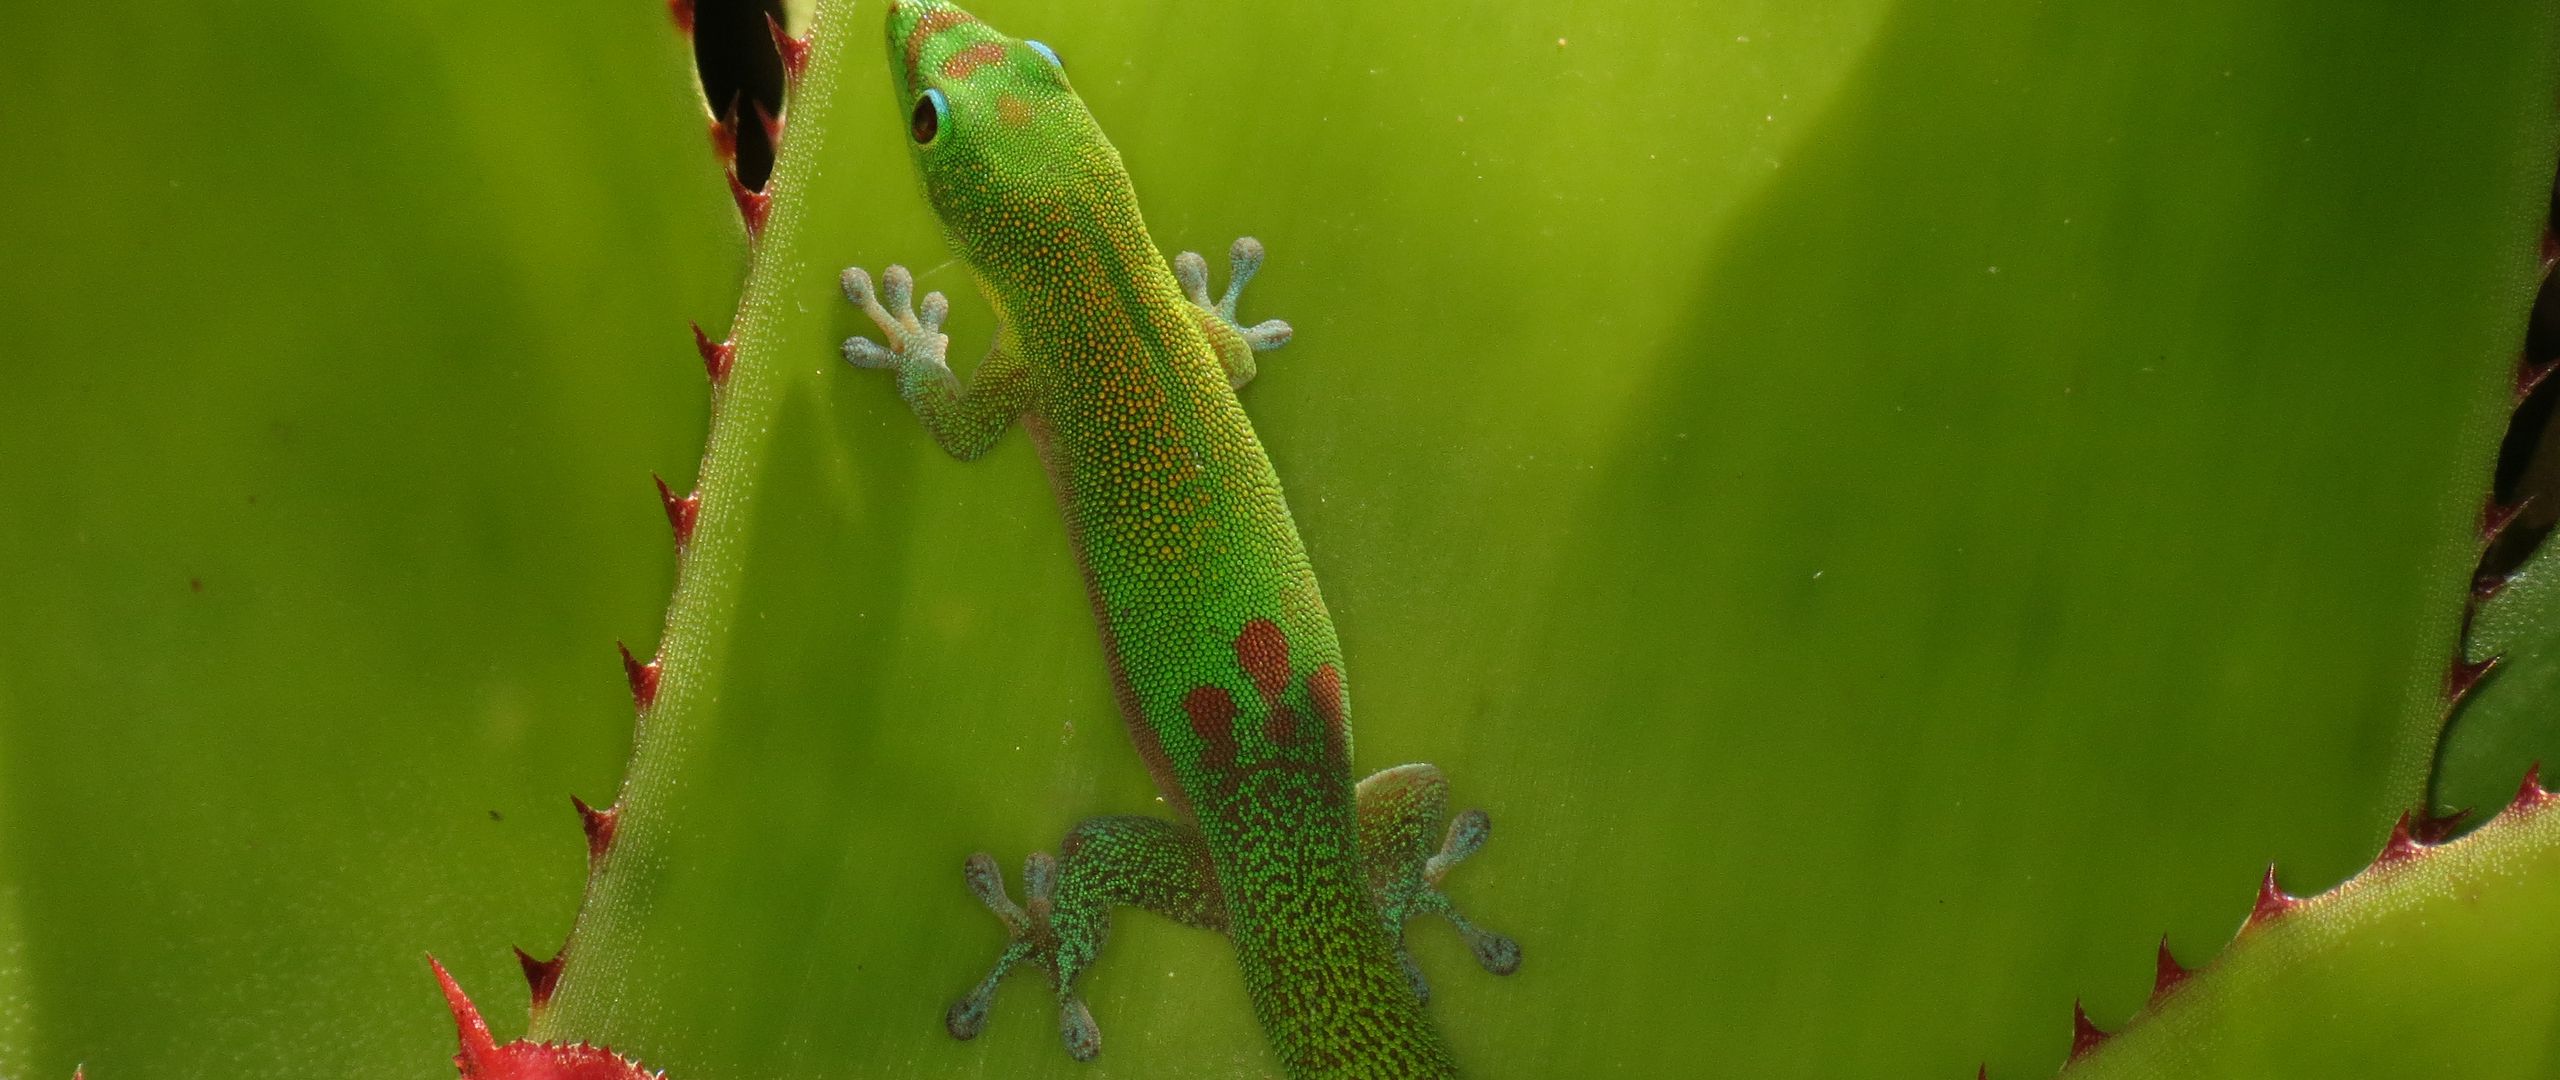 Wallpaper Green Gecko